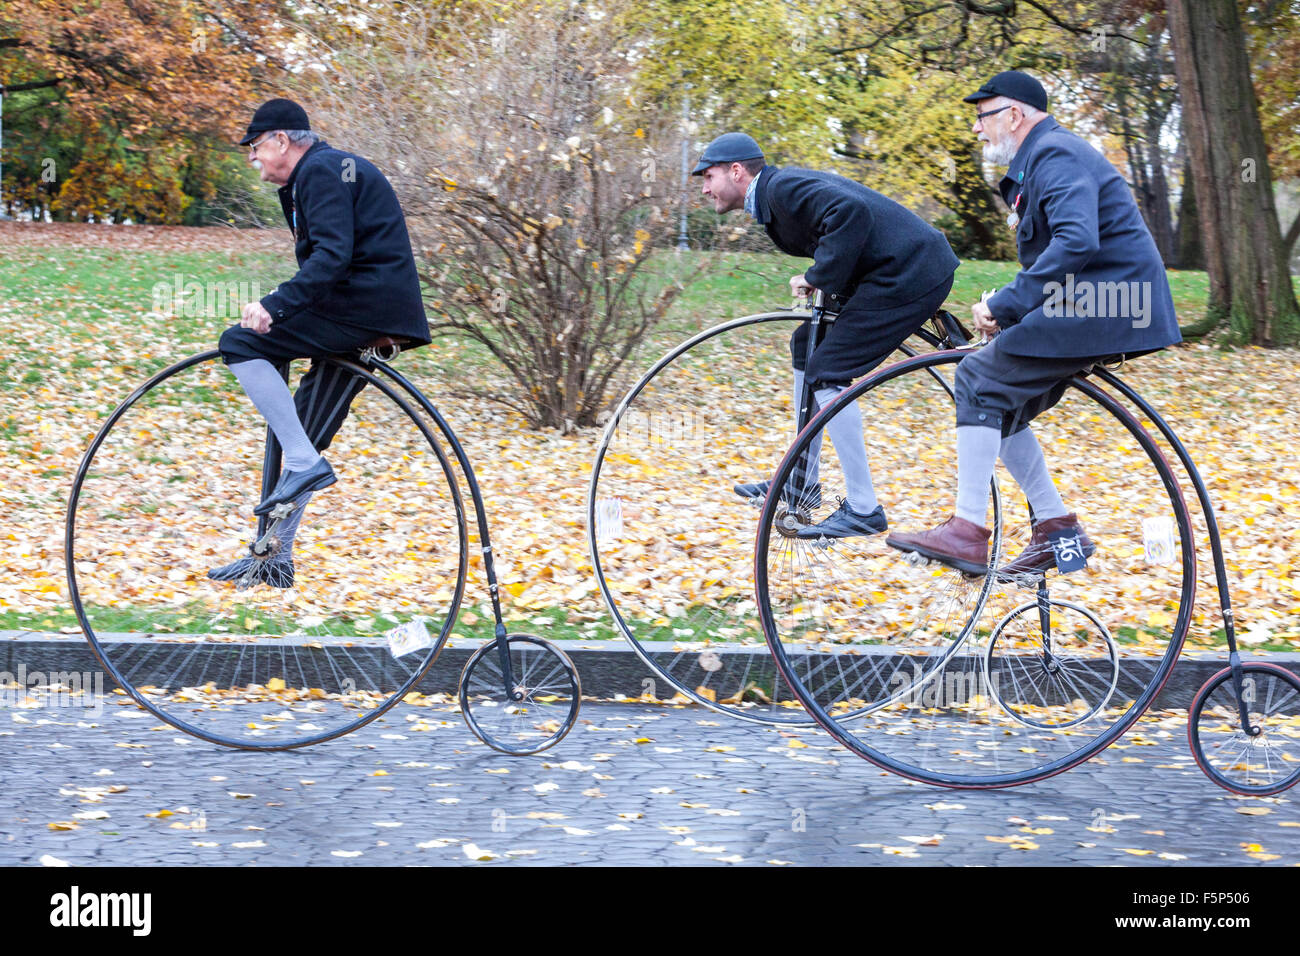 Trois hommes dans une course cycliste traditionnelle Penny Farthing. Les participants vêtus de costumes d'époque, Prague Letna Park automne République tchèque vieillissement actif Banque D'Images